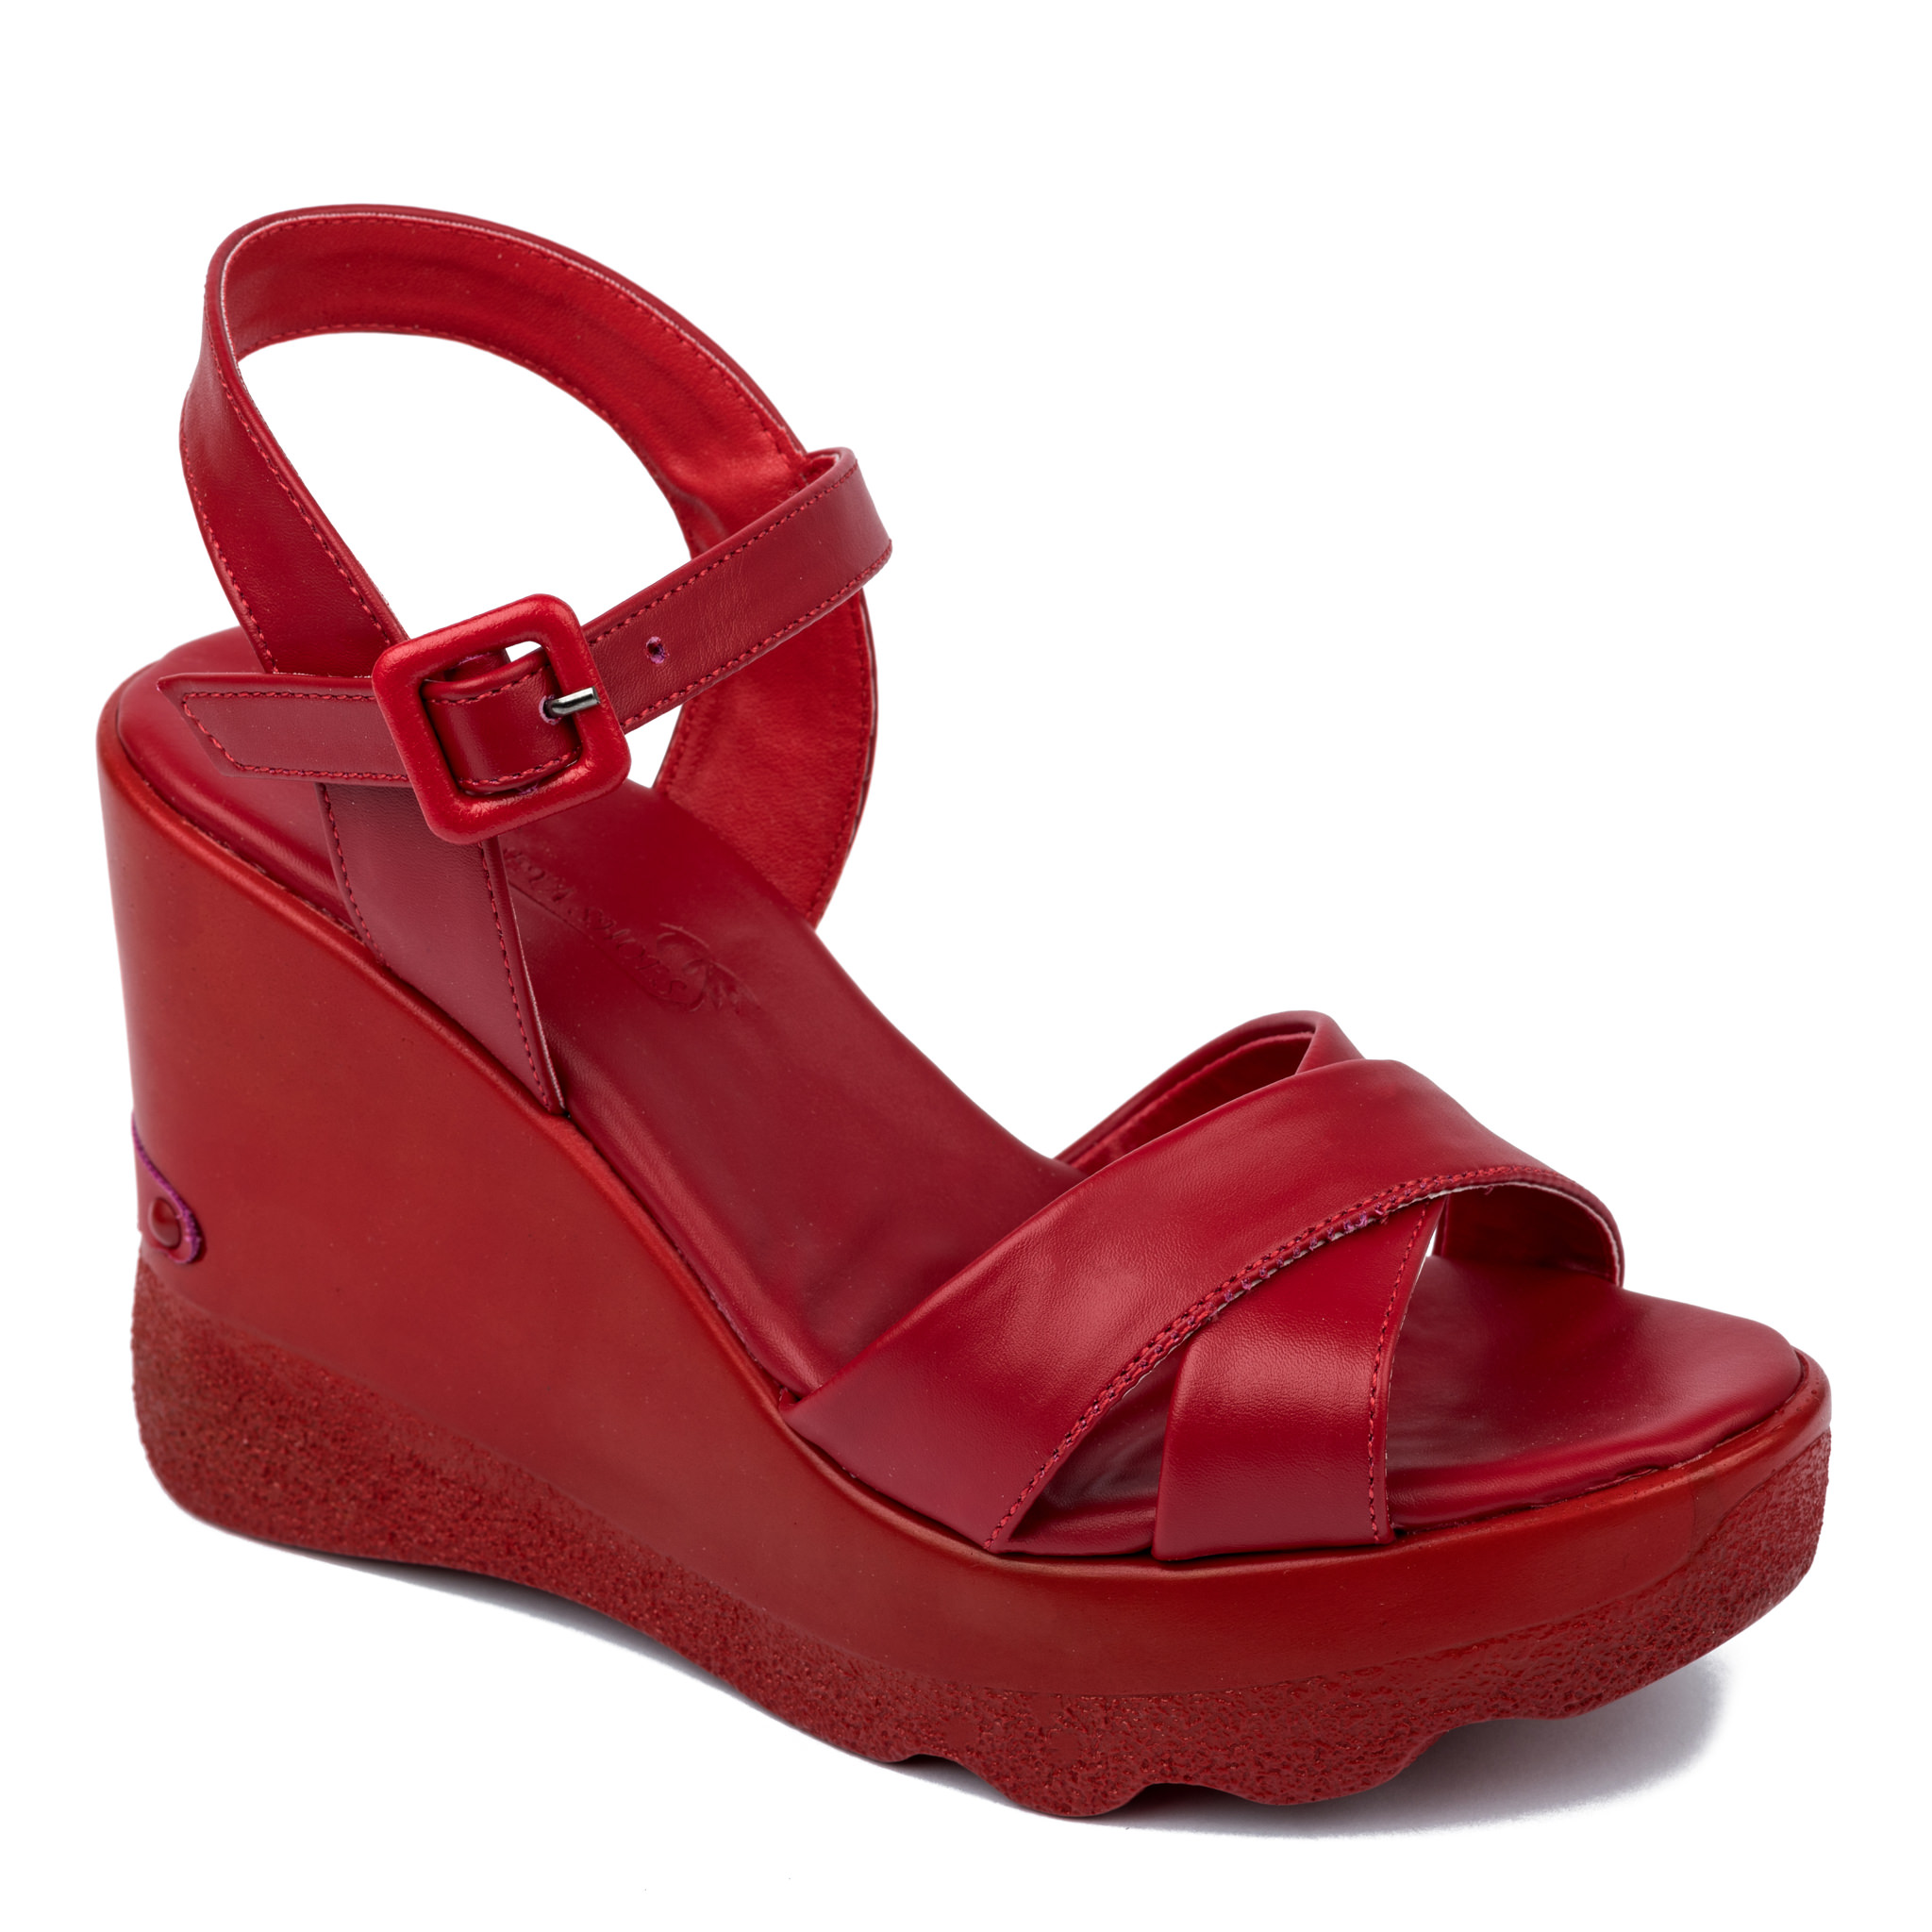 Women sandals A325 - RED